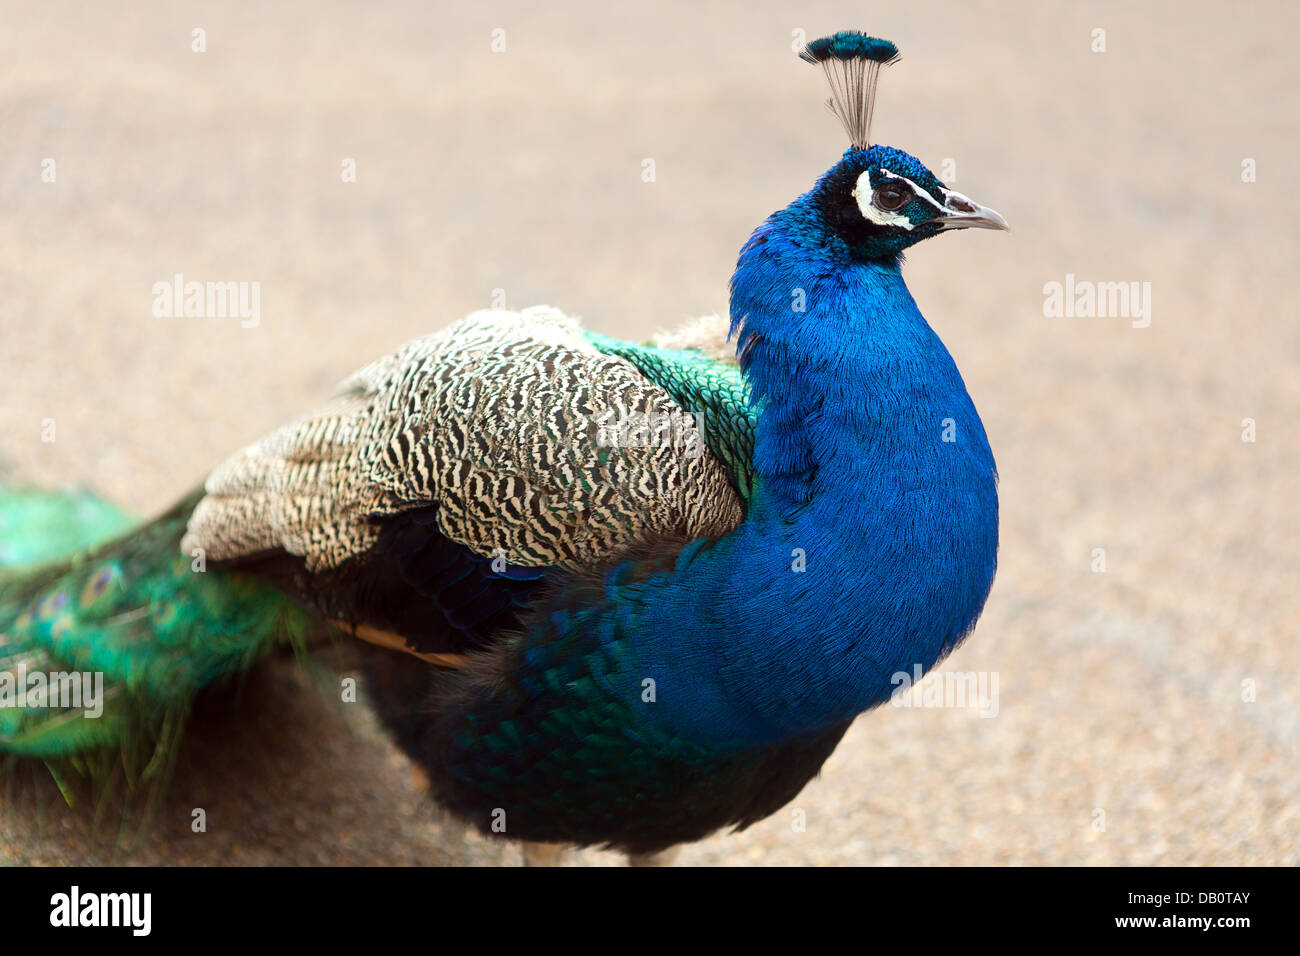 Peacock, (un homme. paons) Banque D'Images